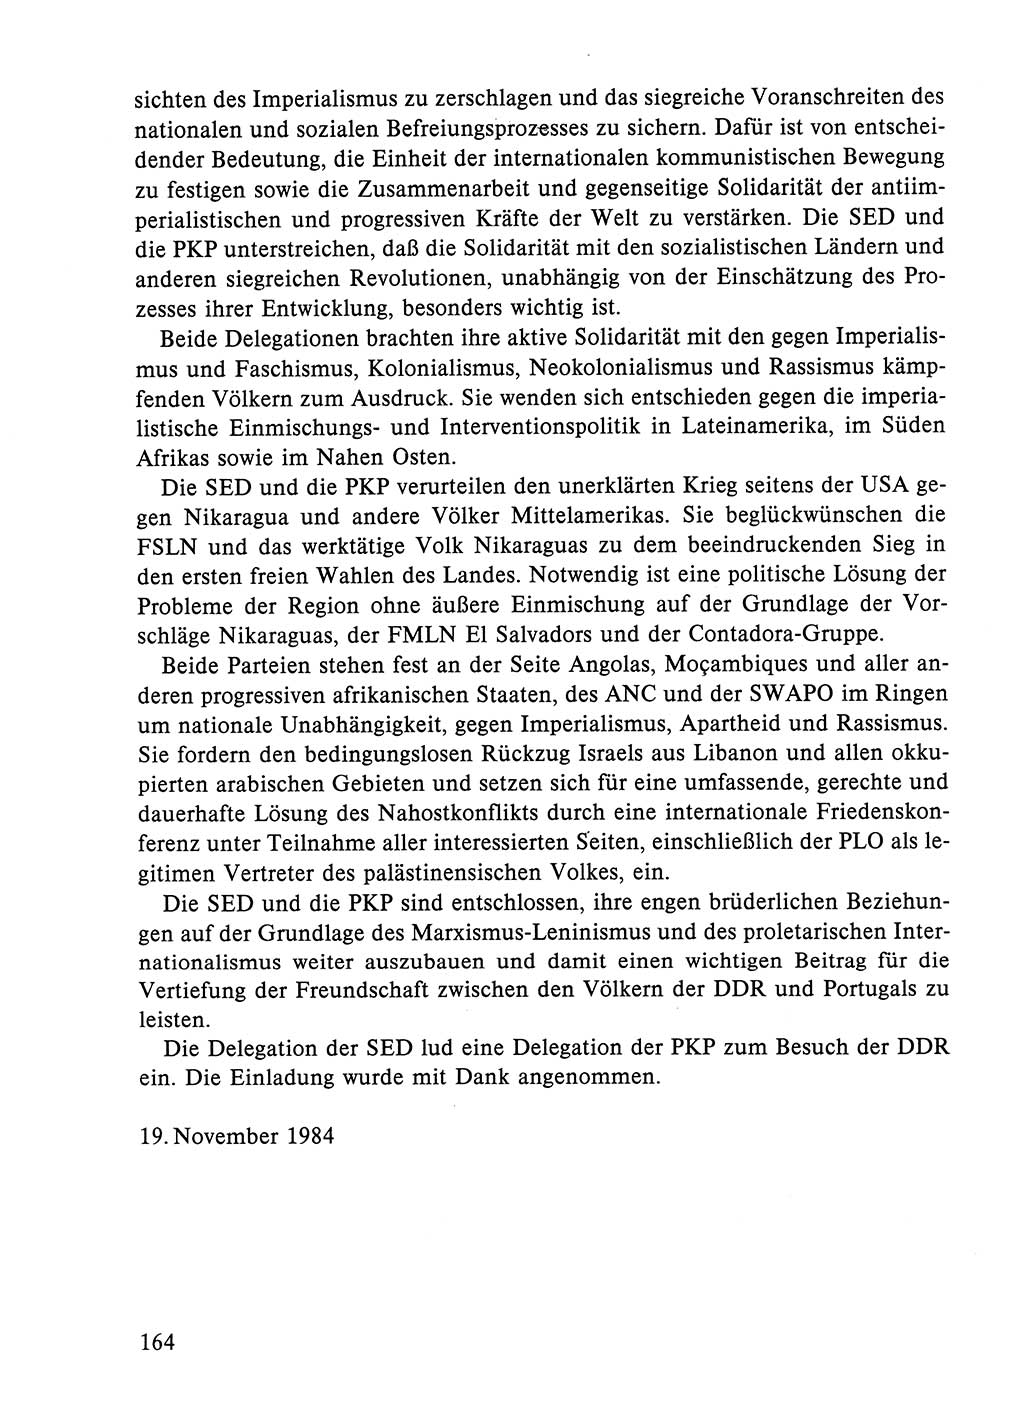 Dokumente der Sozialistischen Einheitspartei Deutschlands (SED) [Deutsche Demokratische Republik (DDR)] 1984-1985, Seite 263 (Dok. SED DDR 1984-1985, S. 263)